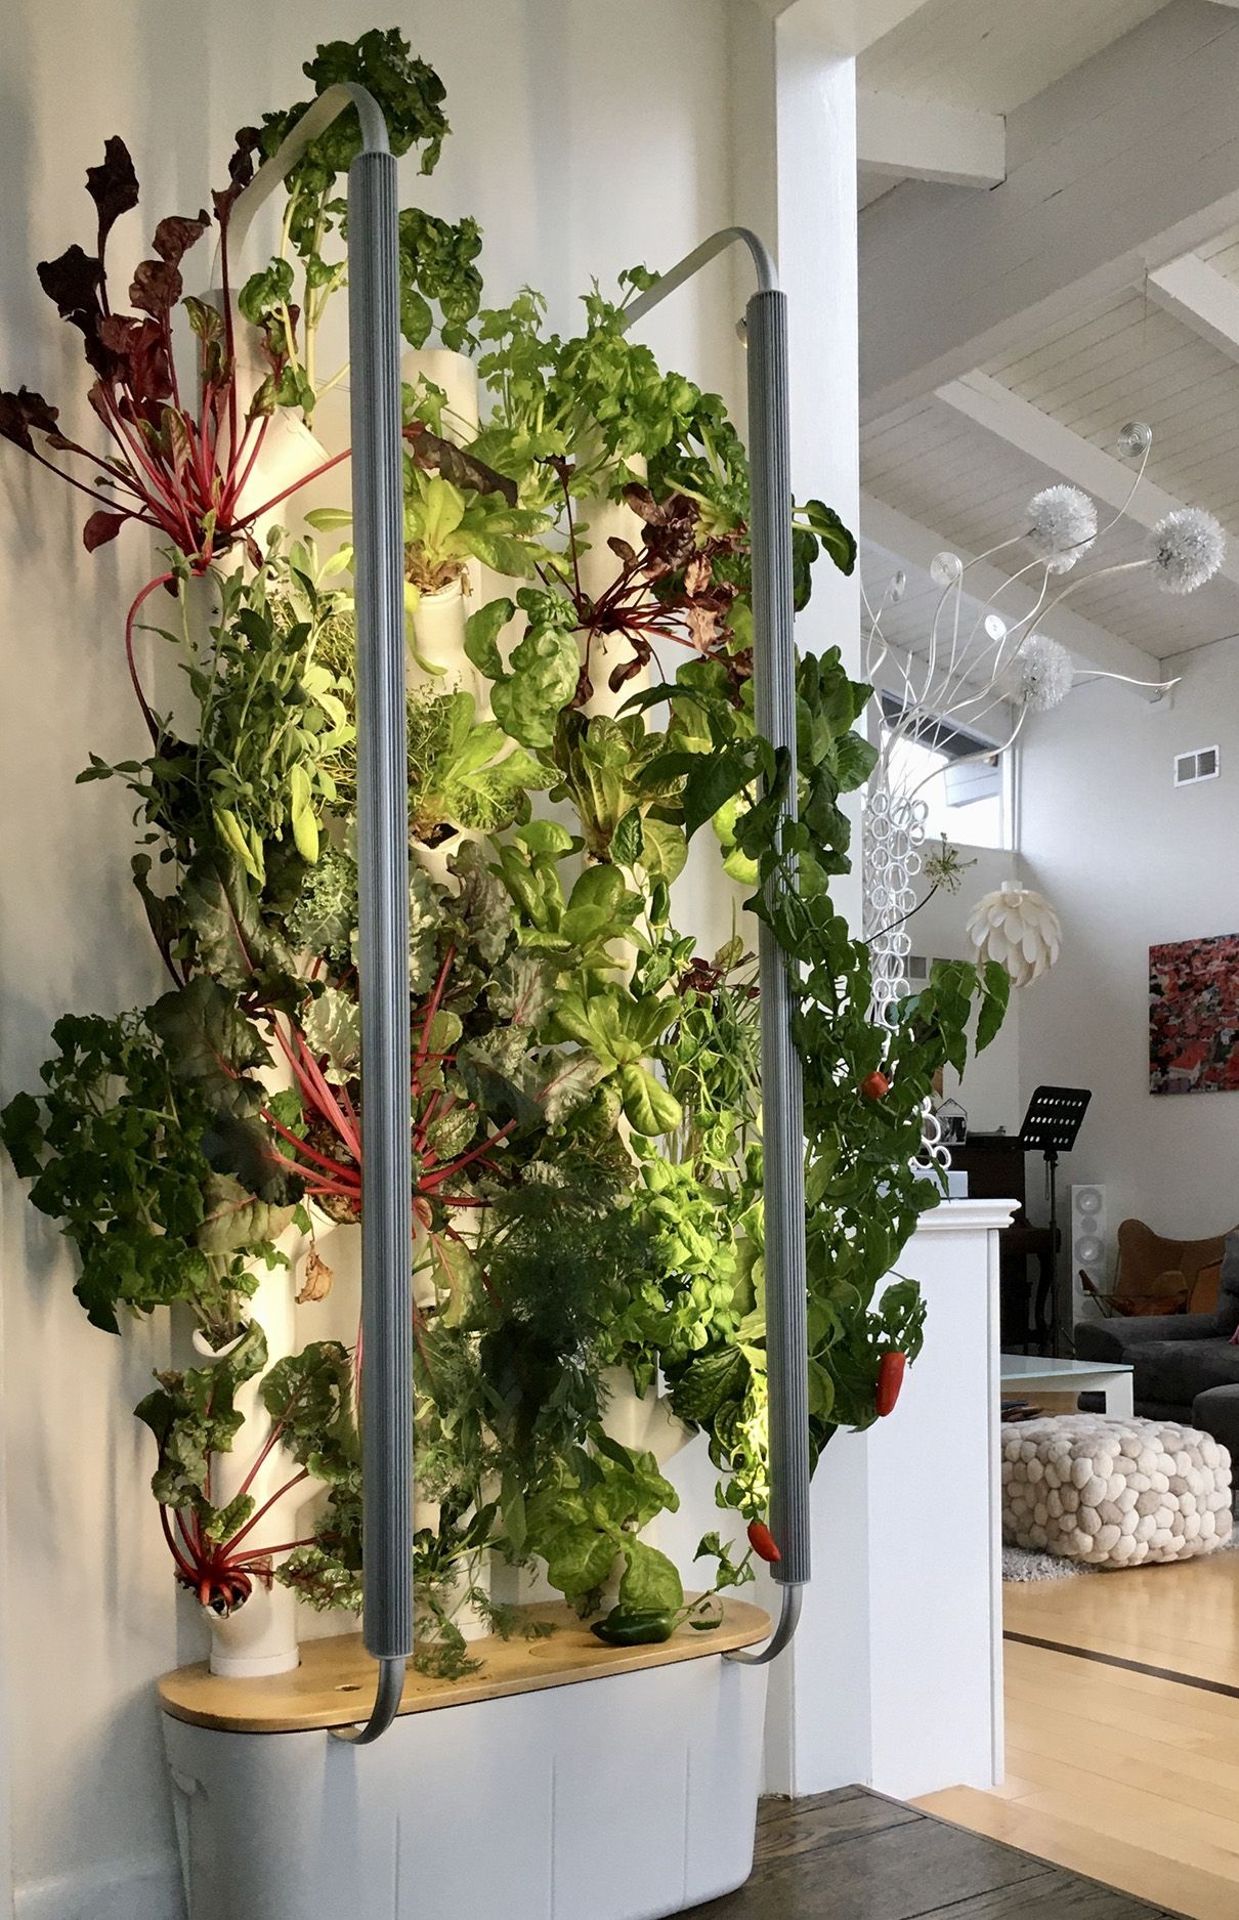 Les jardins intelligents investissent l'intérieur des appartements 